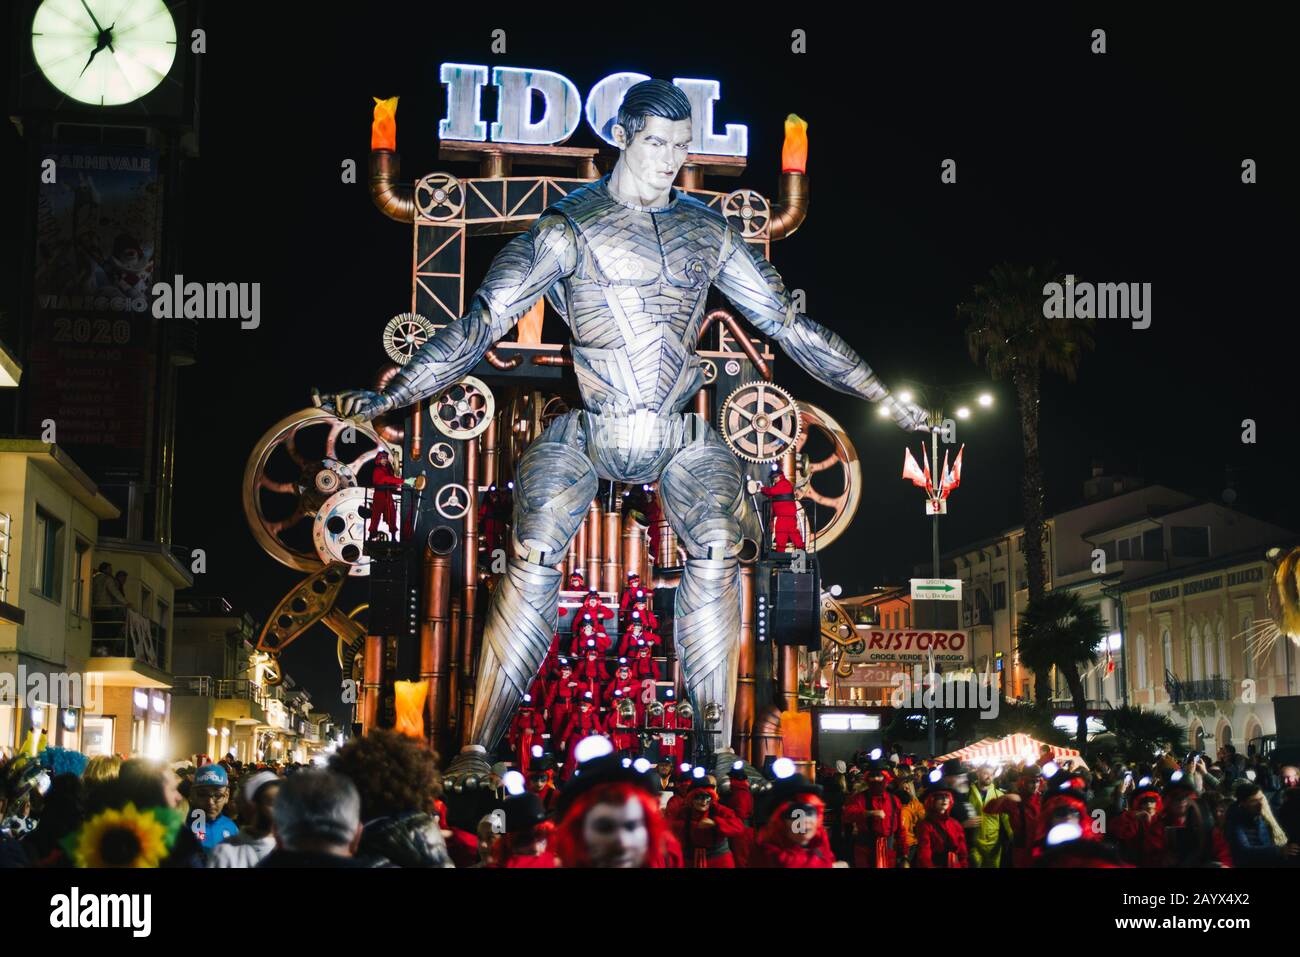 Viareggio,ITALY-FEB.01 2020: 'Idol' è un gigantesco galleggiante di carnevale che rappresenta una parodia della calciatrice cristiano ronaldo, parate in via Foto Stock